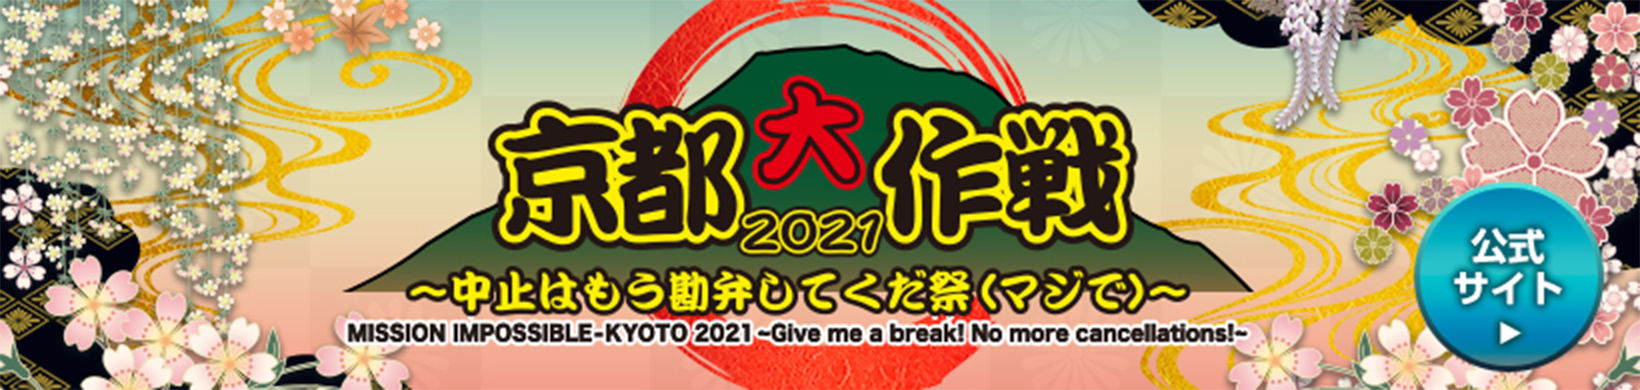 京都大作戦2021 公式サイト